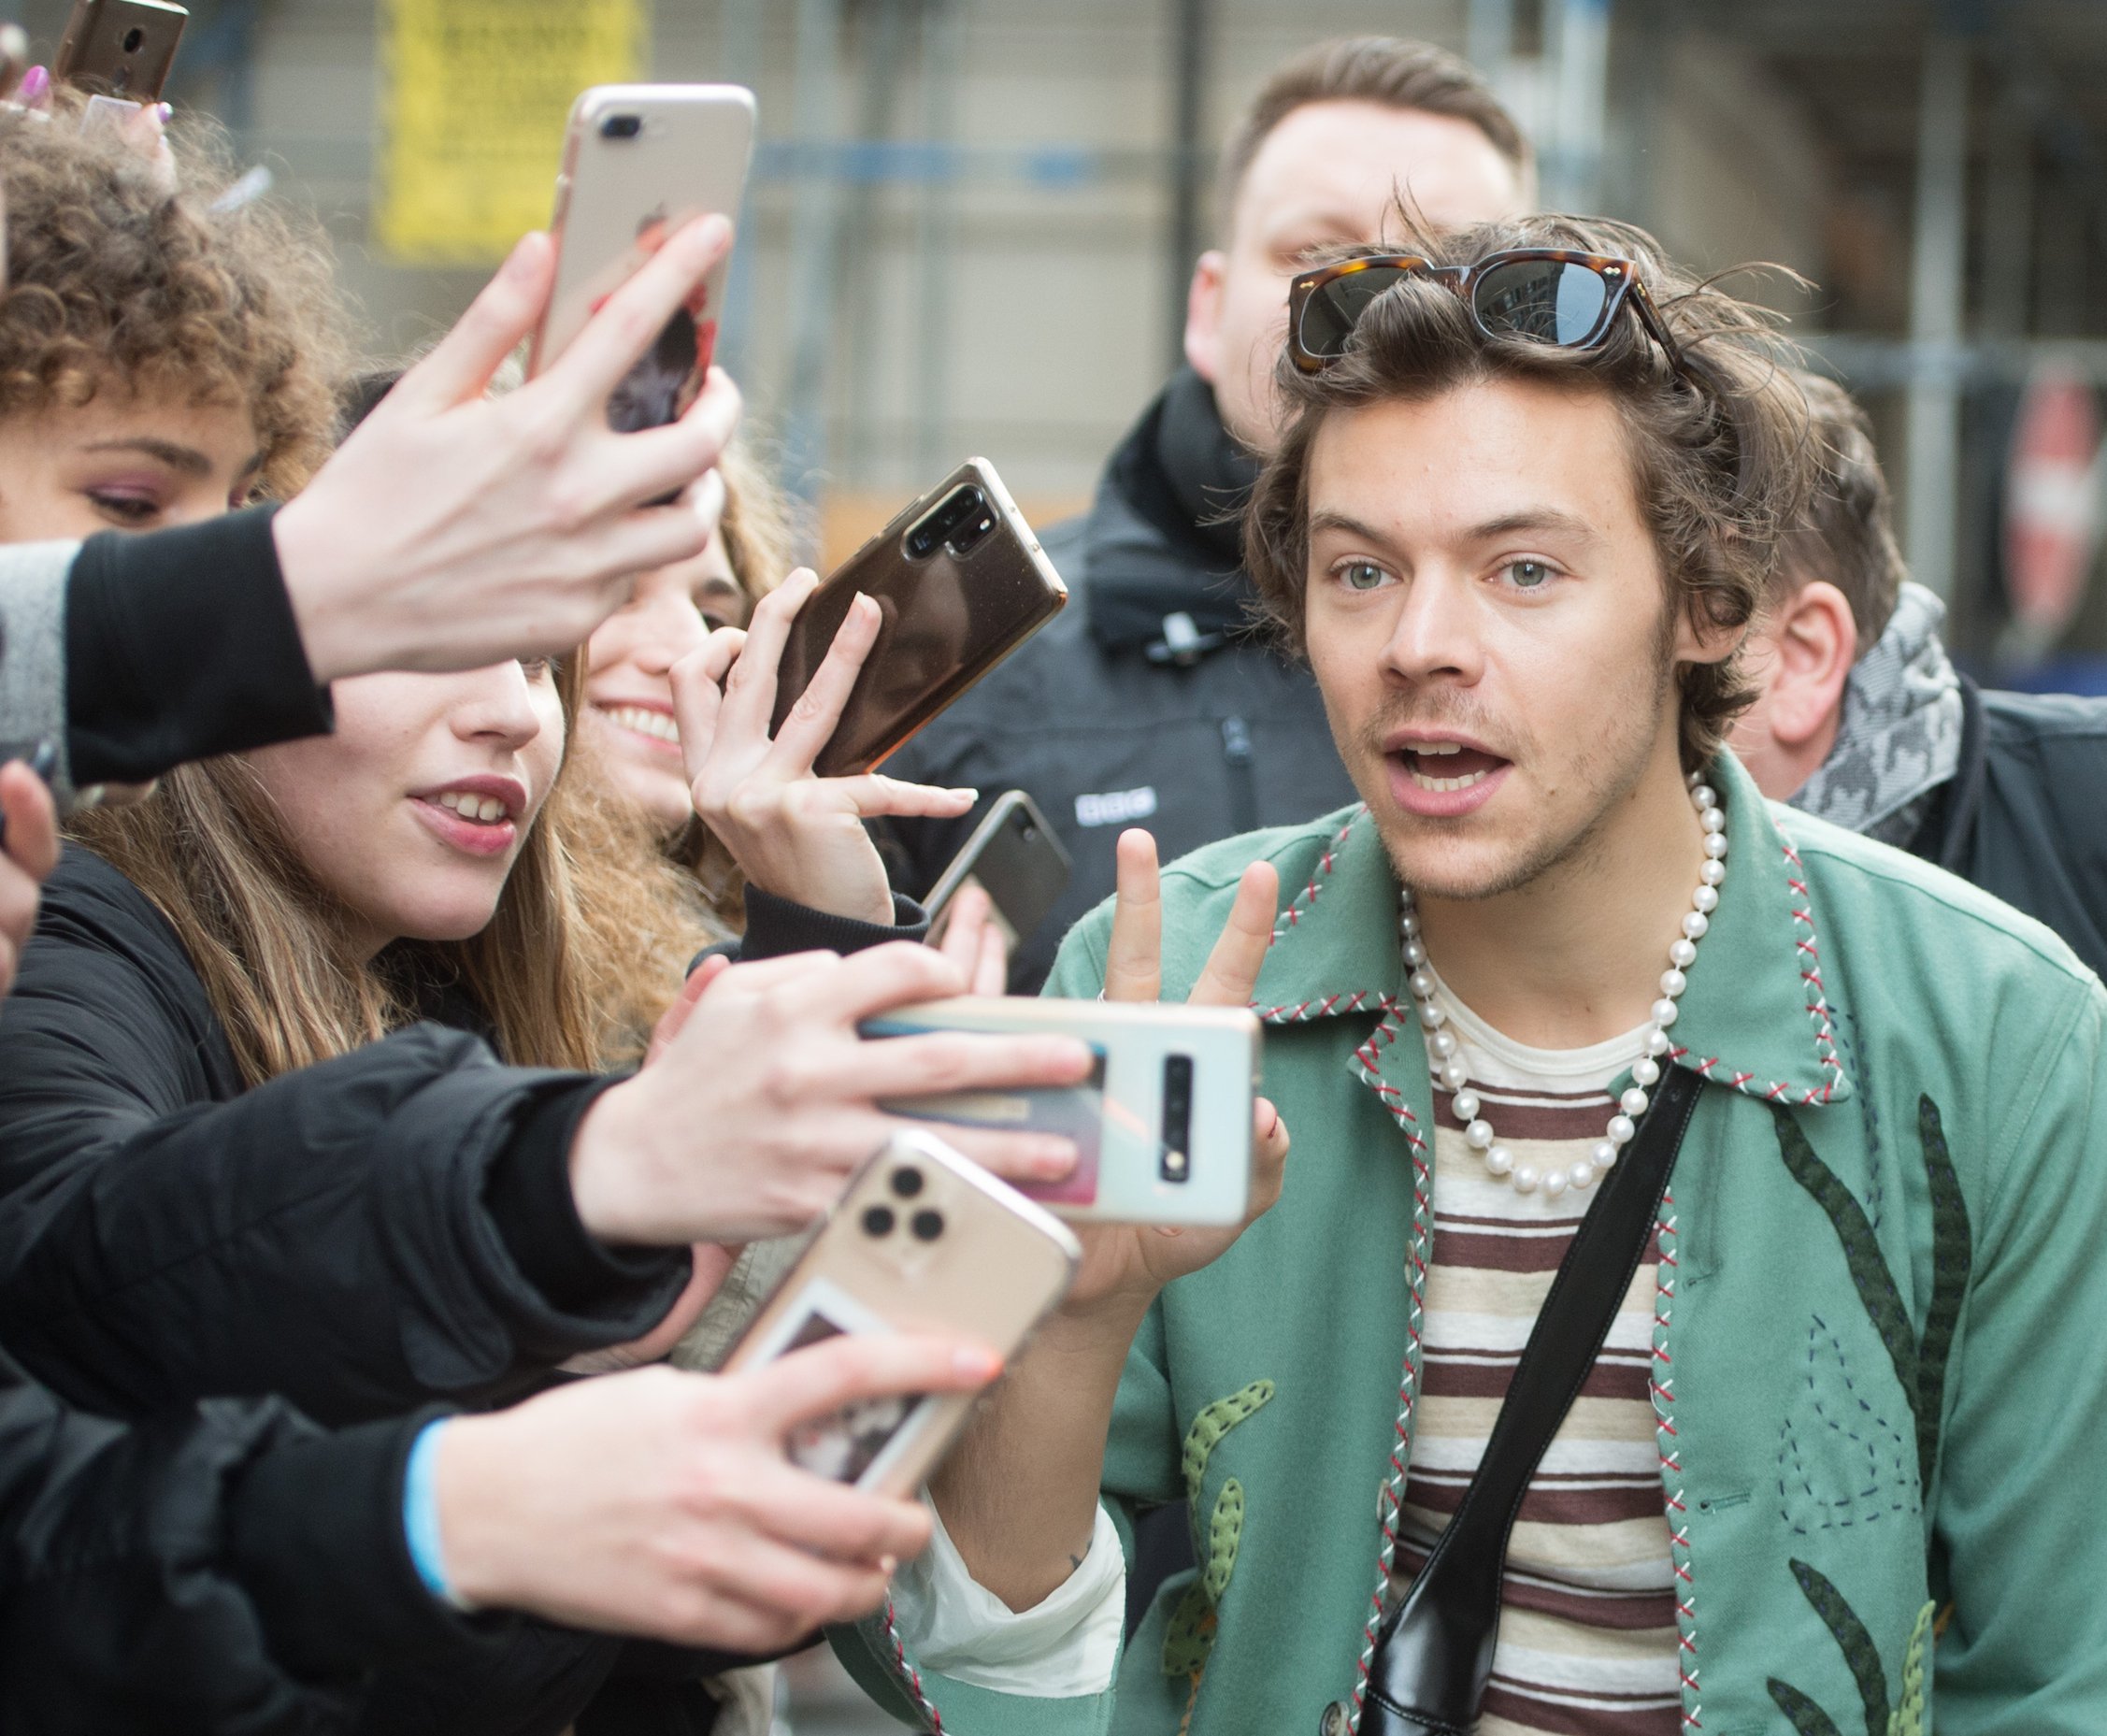 Harry Styles takes a selfie with a fan